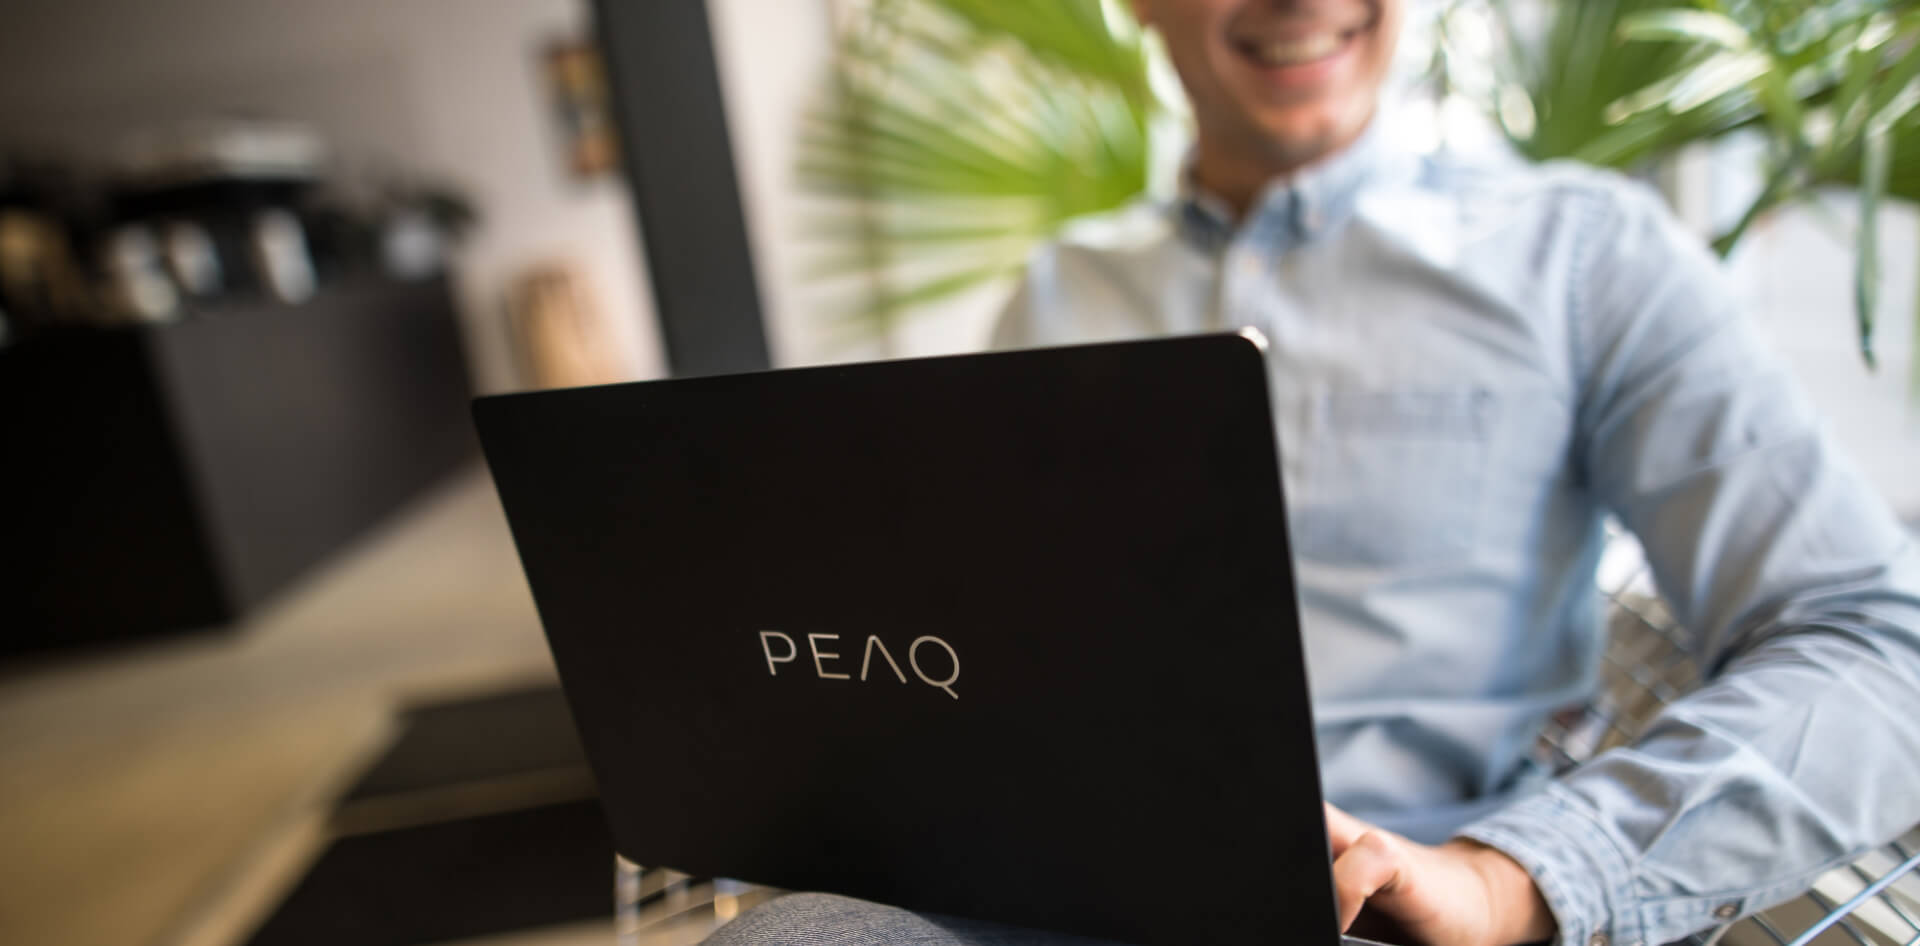 Jeune homme avec un ordinateur portable PEAQ sur ses genoux, sourit, assis au bureau ou dans un café, gros plan